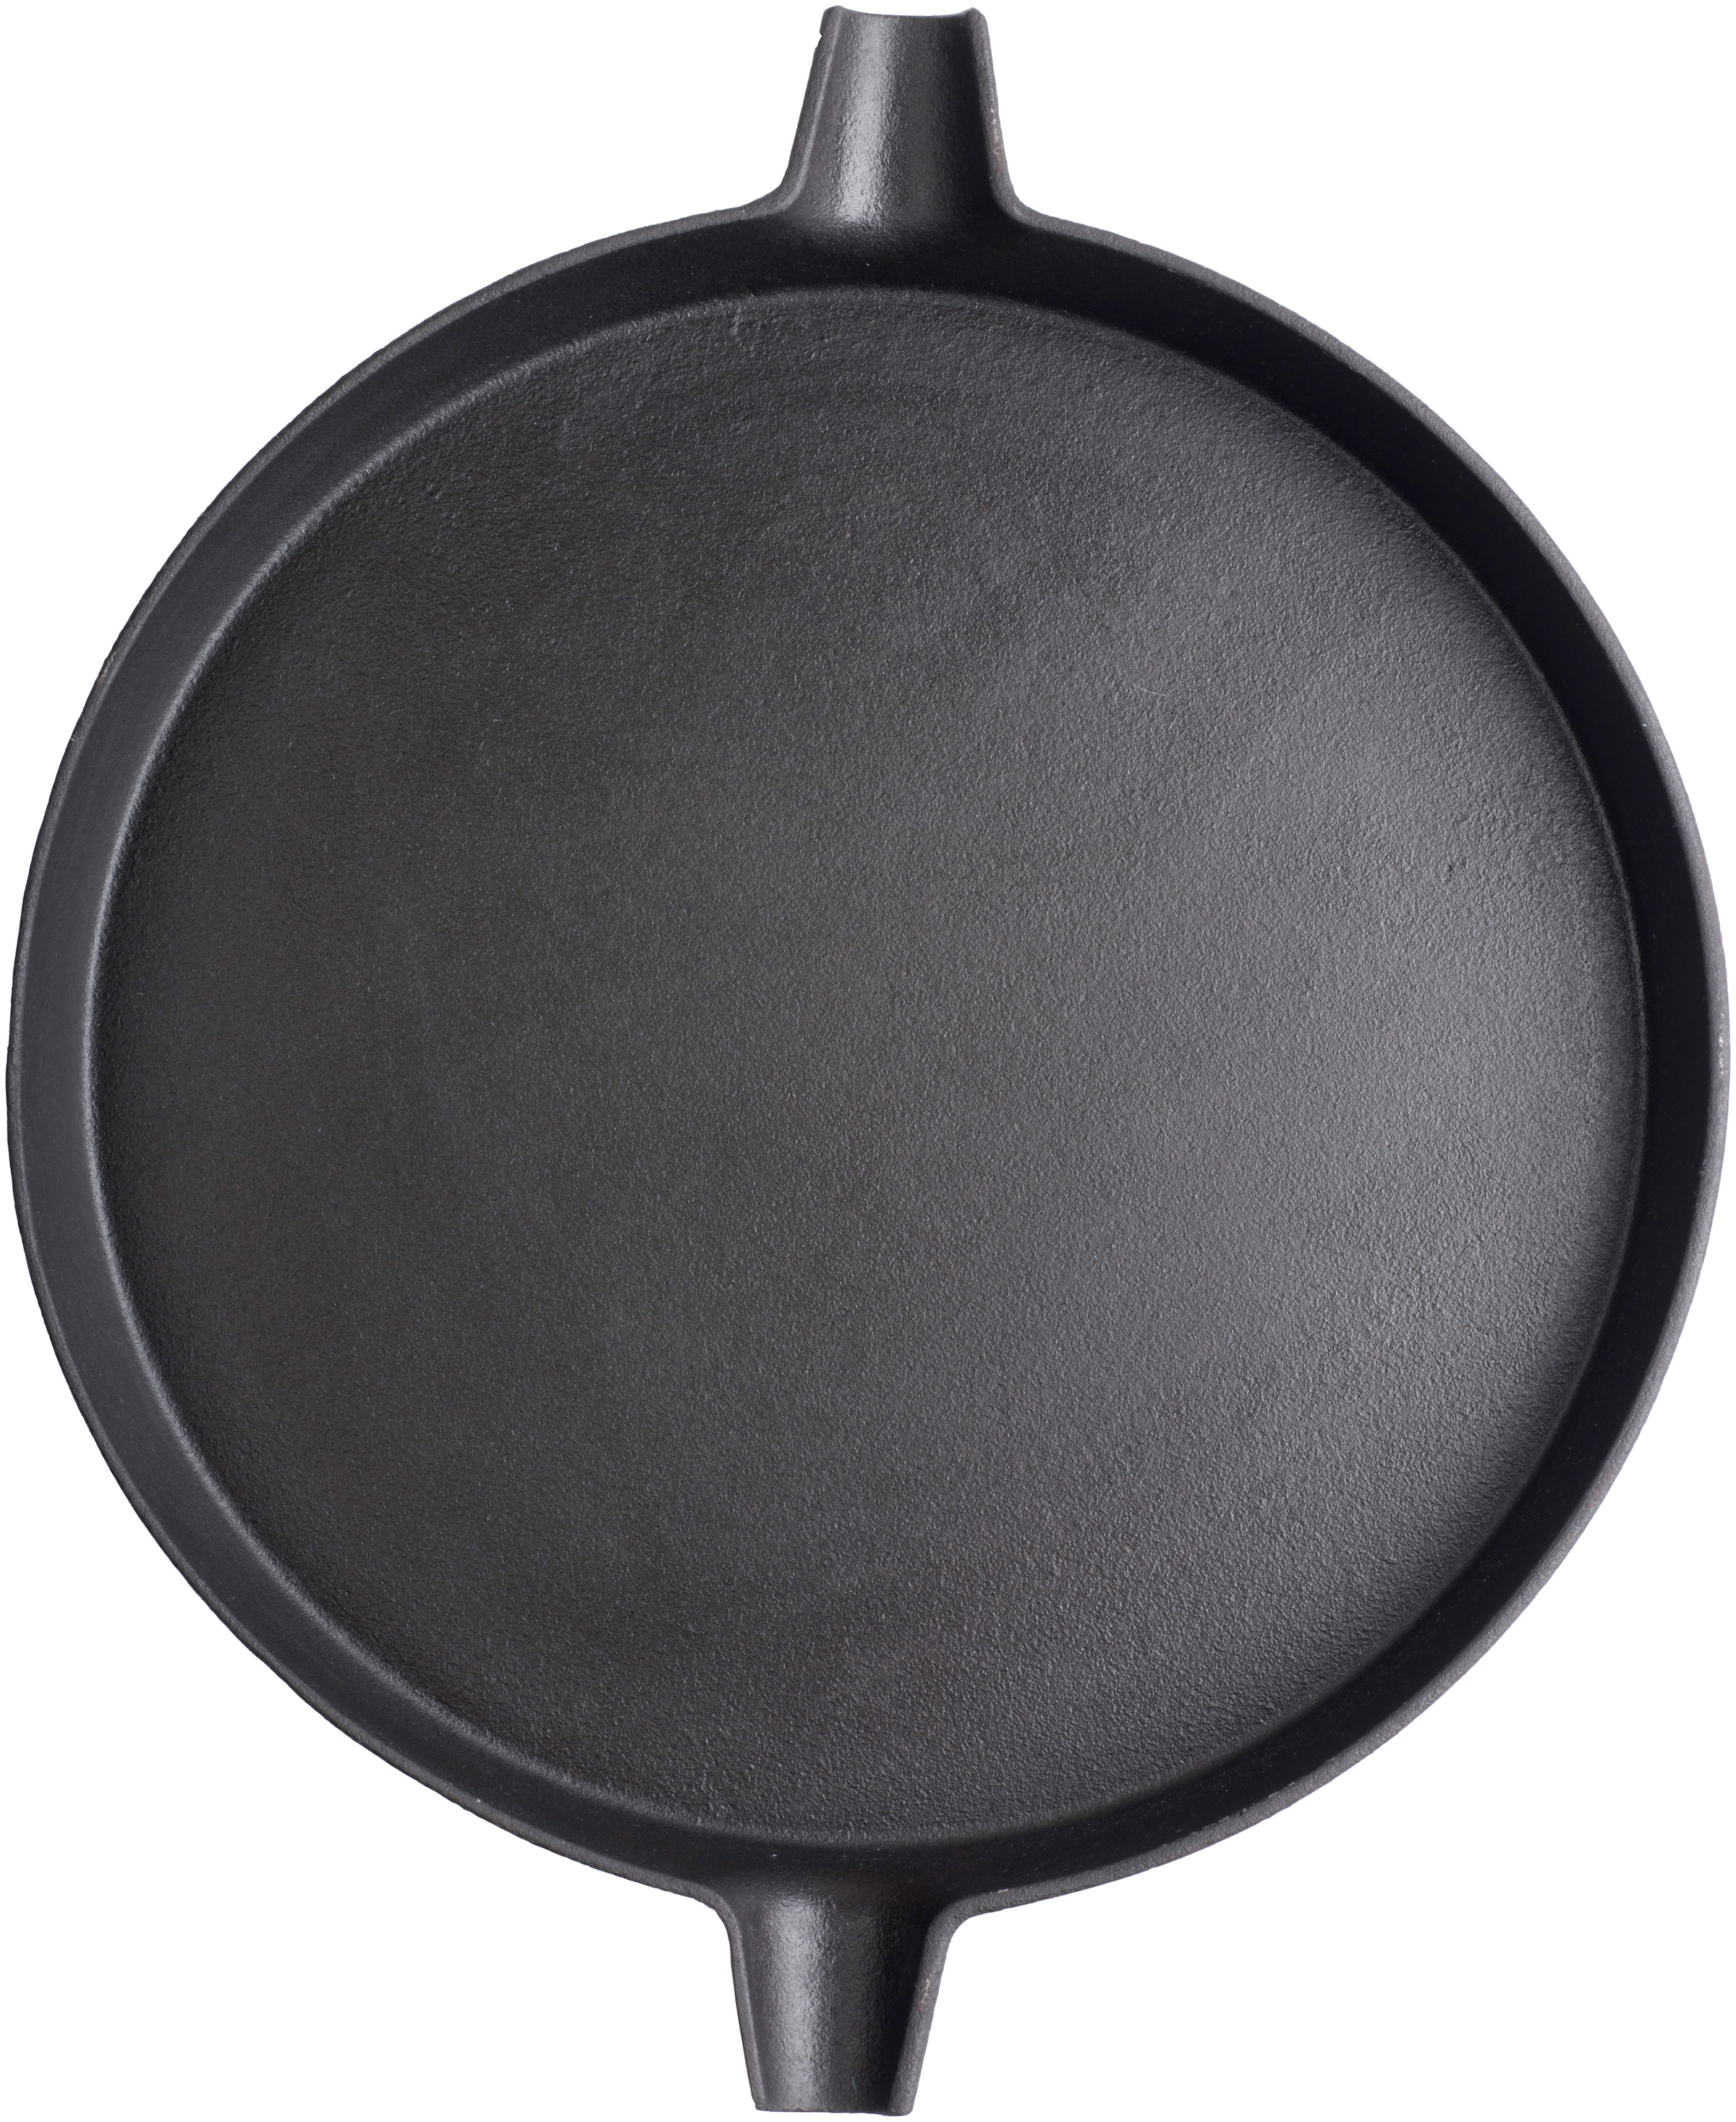 Tepro Grillpfanne, Gusseisen, 31,7 cm Durchmesser Raten bestellen auf